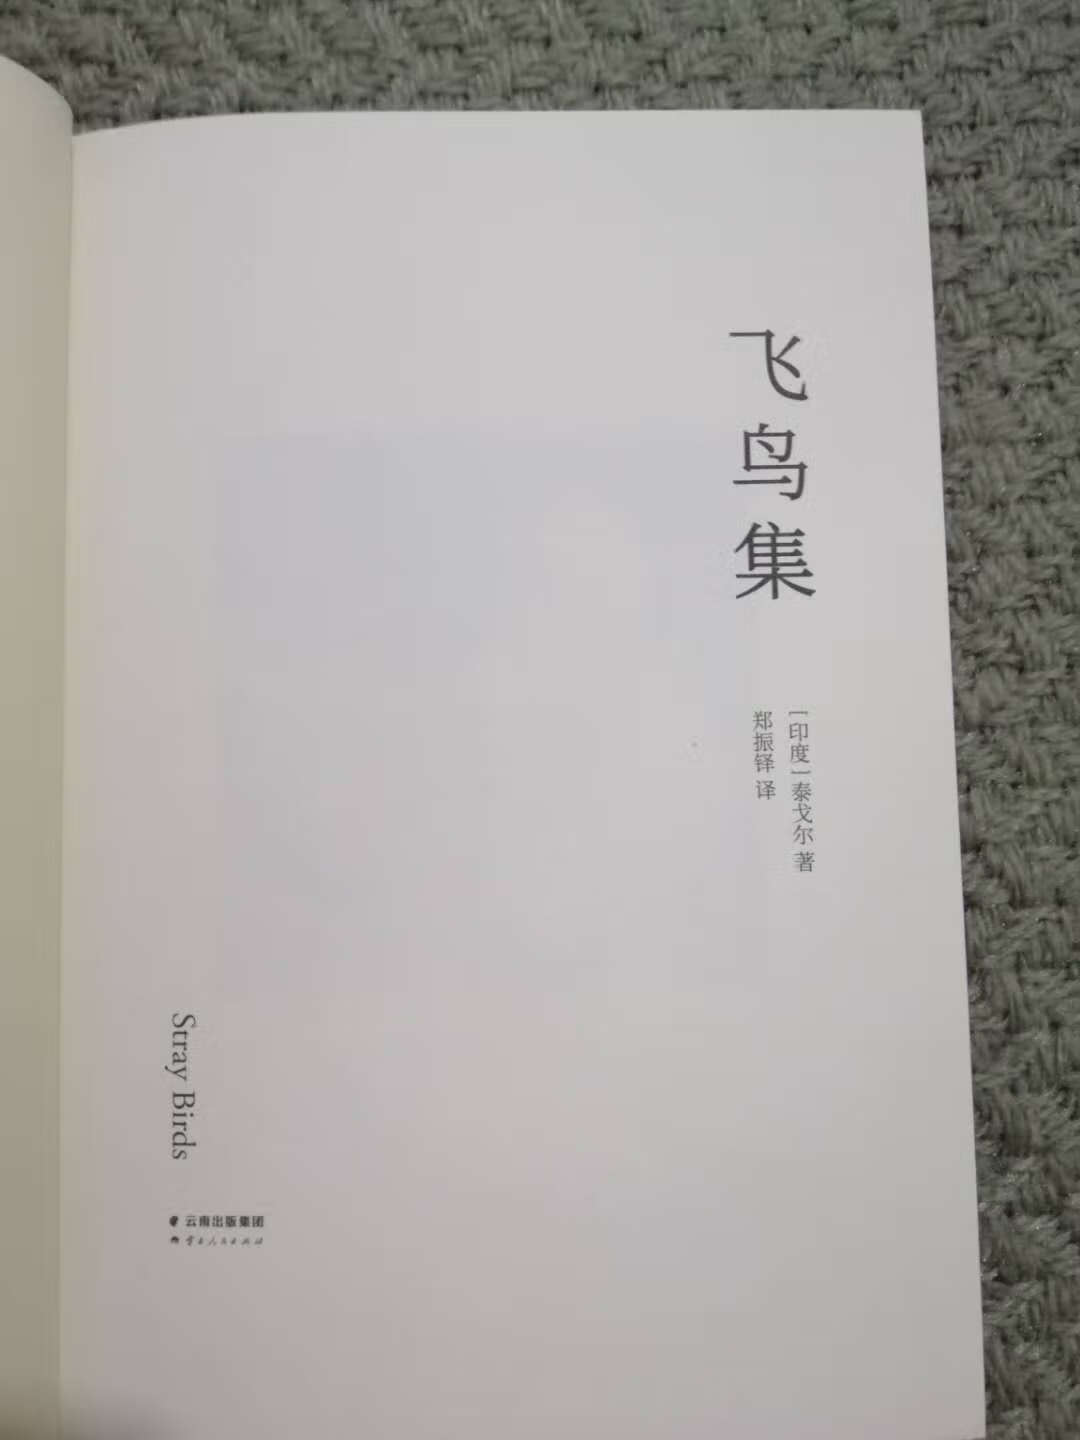 宝贝书终于到了，超级推荐这个版本，中文是郑郑铎译的，超级美，这个版本完整收录了泰戈尔的作品，无删减，还有精美的配图，简直爱了爱了(?°з°)-? 但是，看完以后我居然最喜欢的是封面背后，徐志摩的评价……?